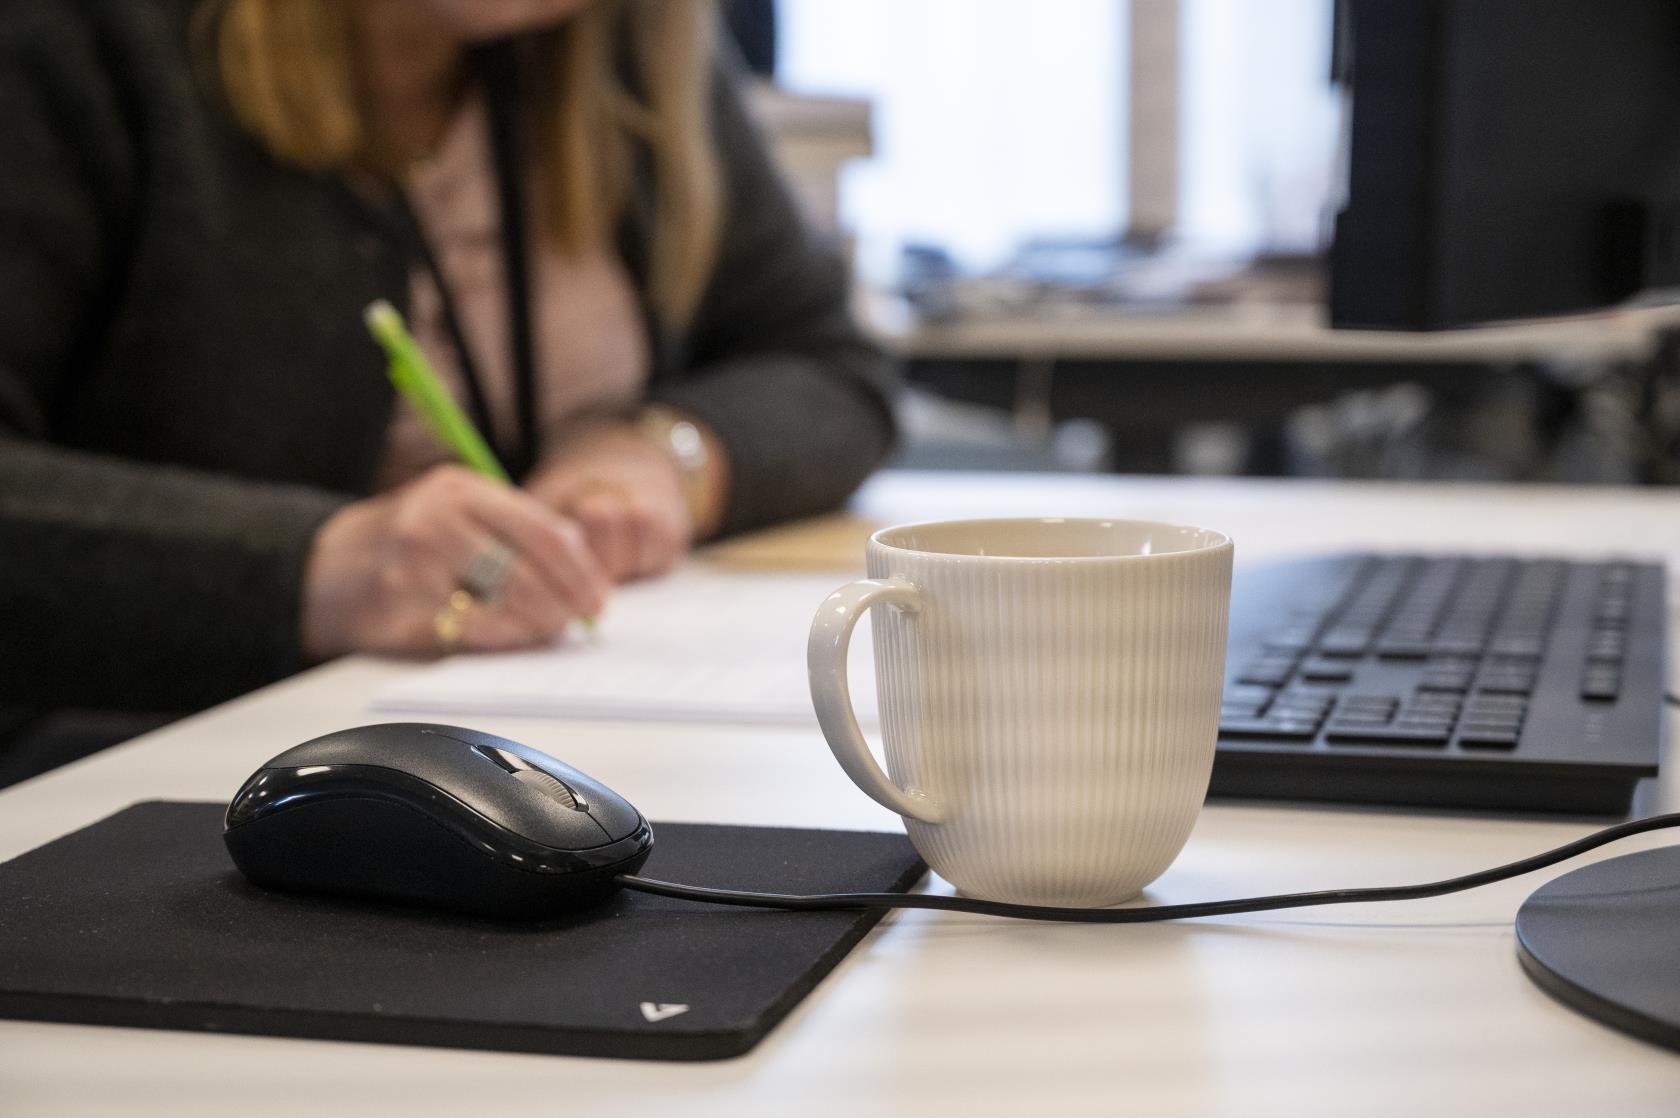 En kaffekopp står bredvid en datormus på ett skrivbord. En kvinna som antecknar syns suddigt i bakgrunden.